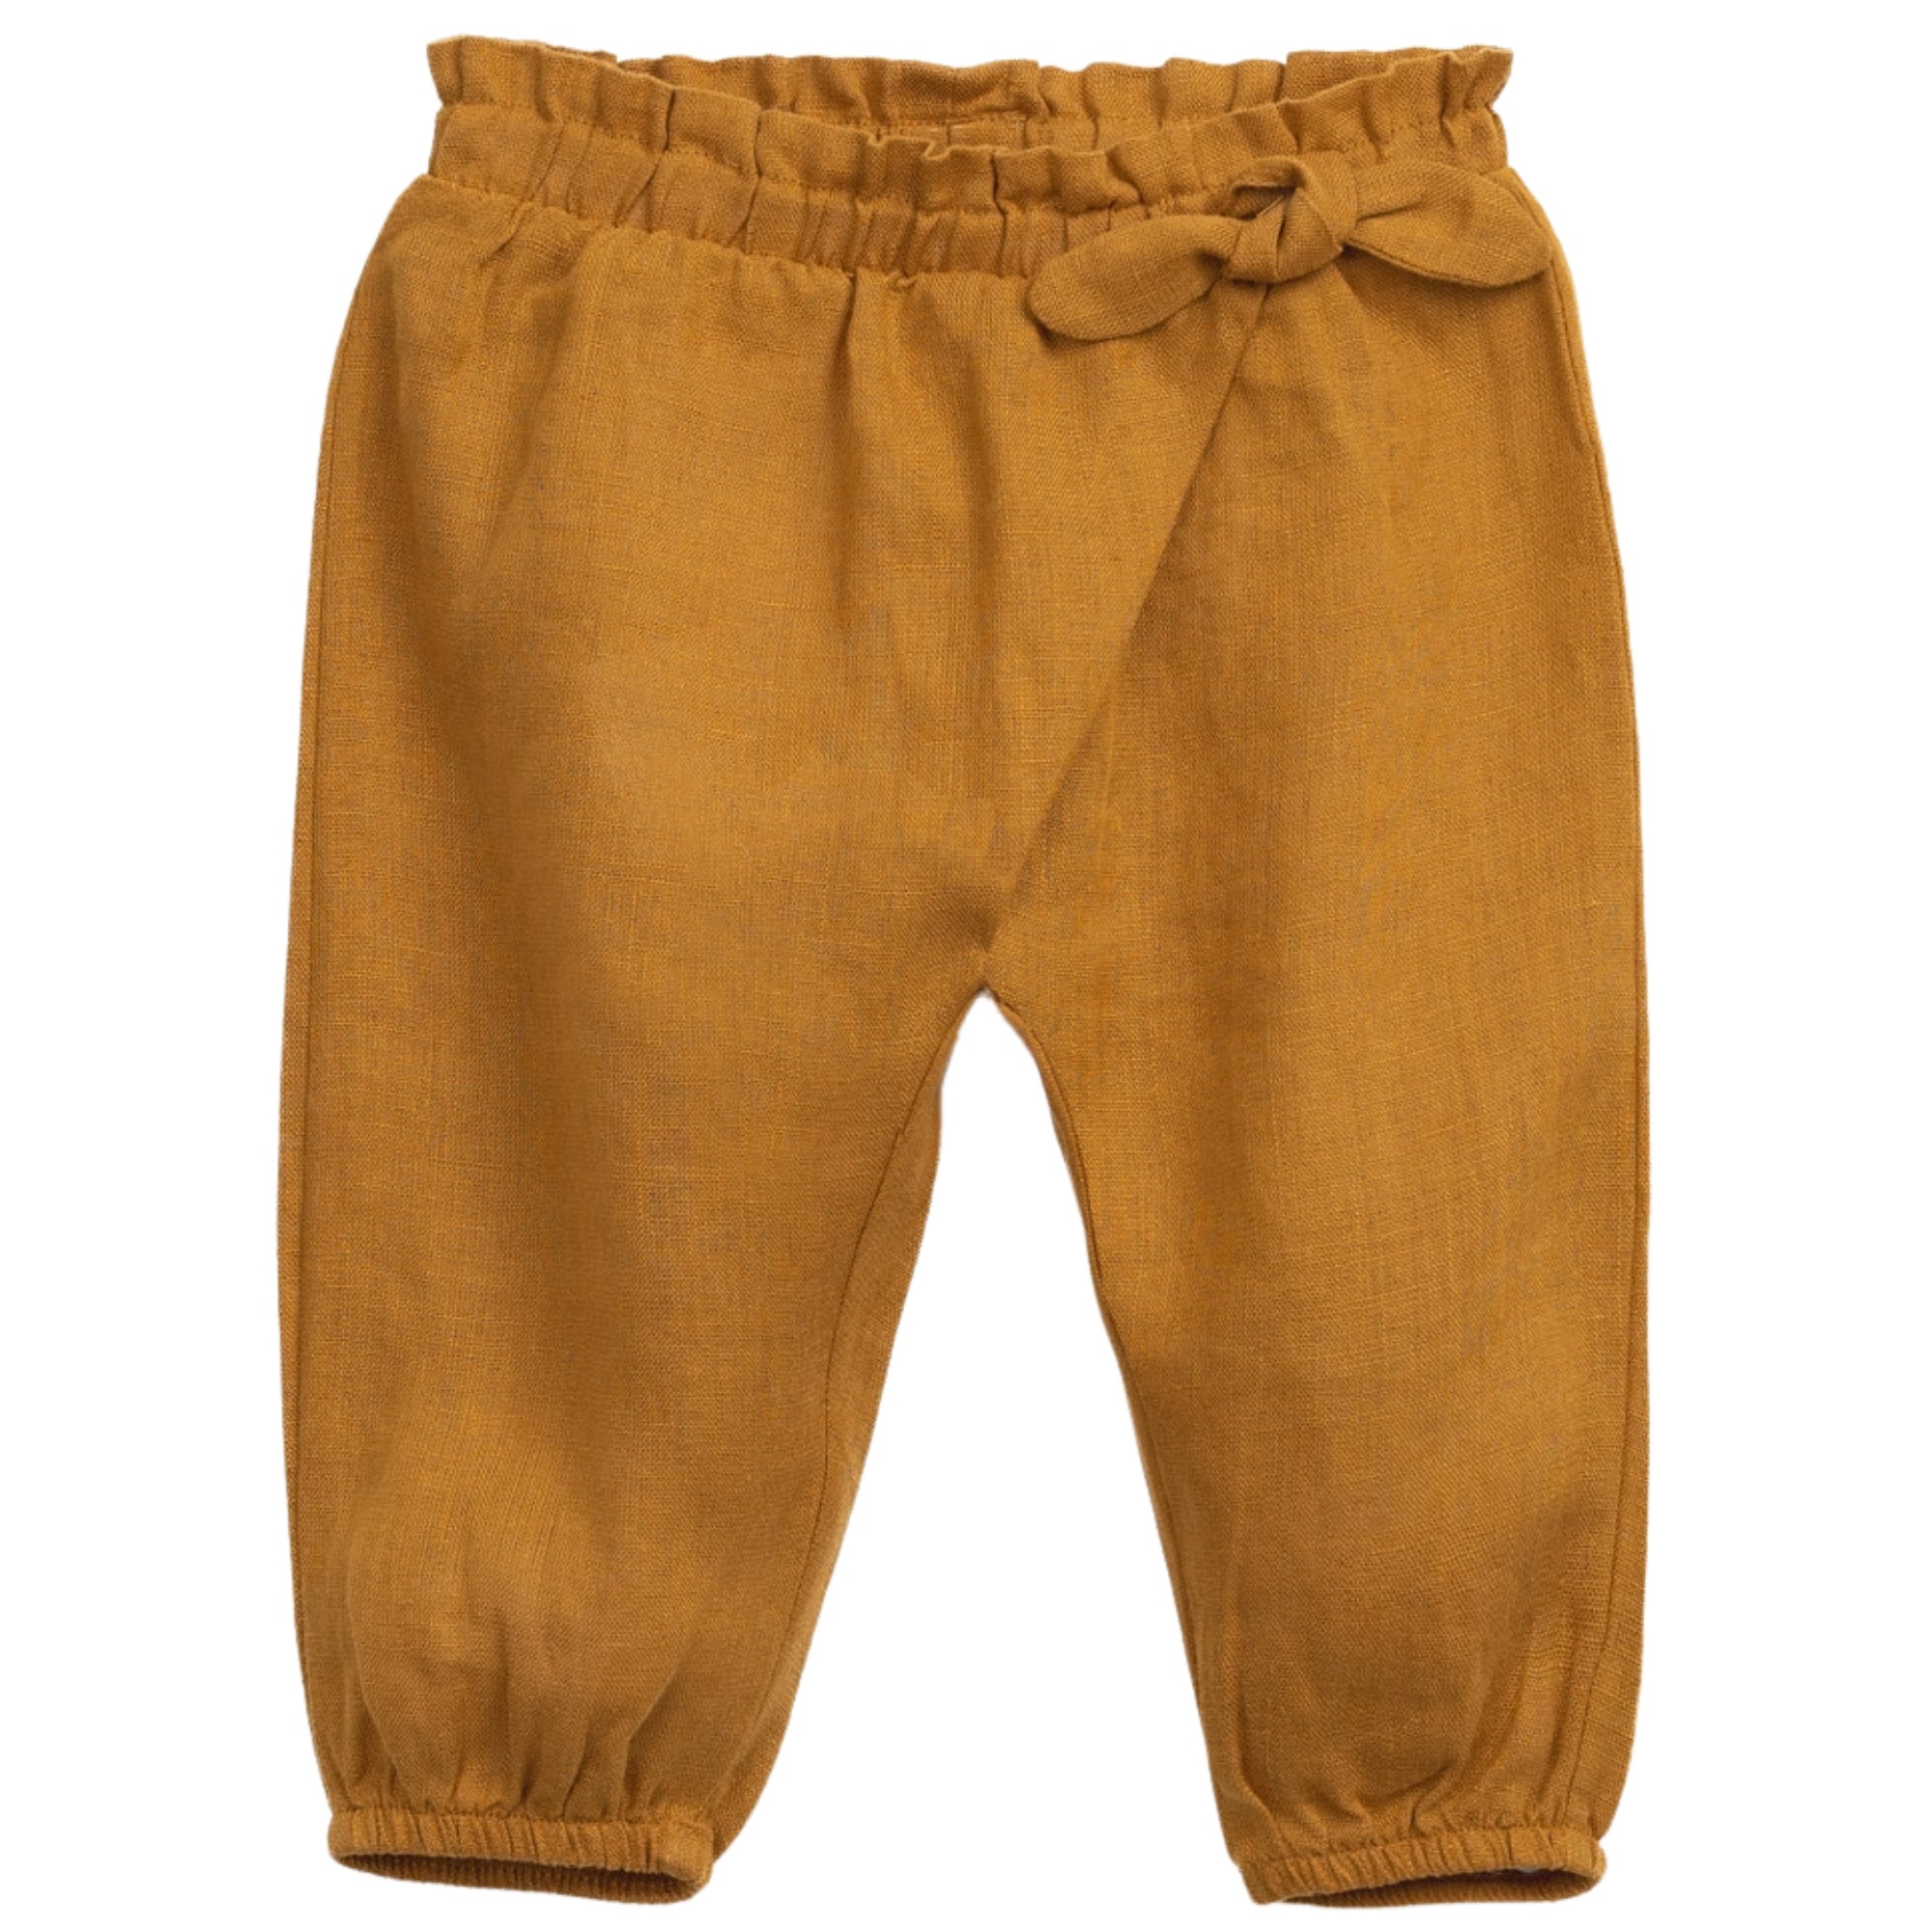 pantalone-lino-colore-arancio-con-fiocco-per-bambina